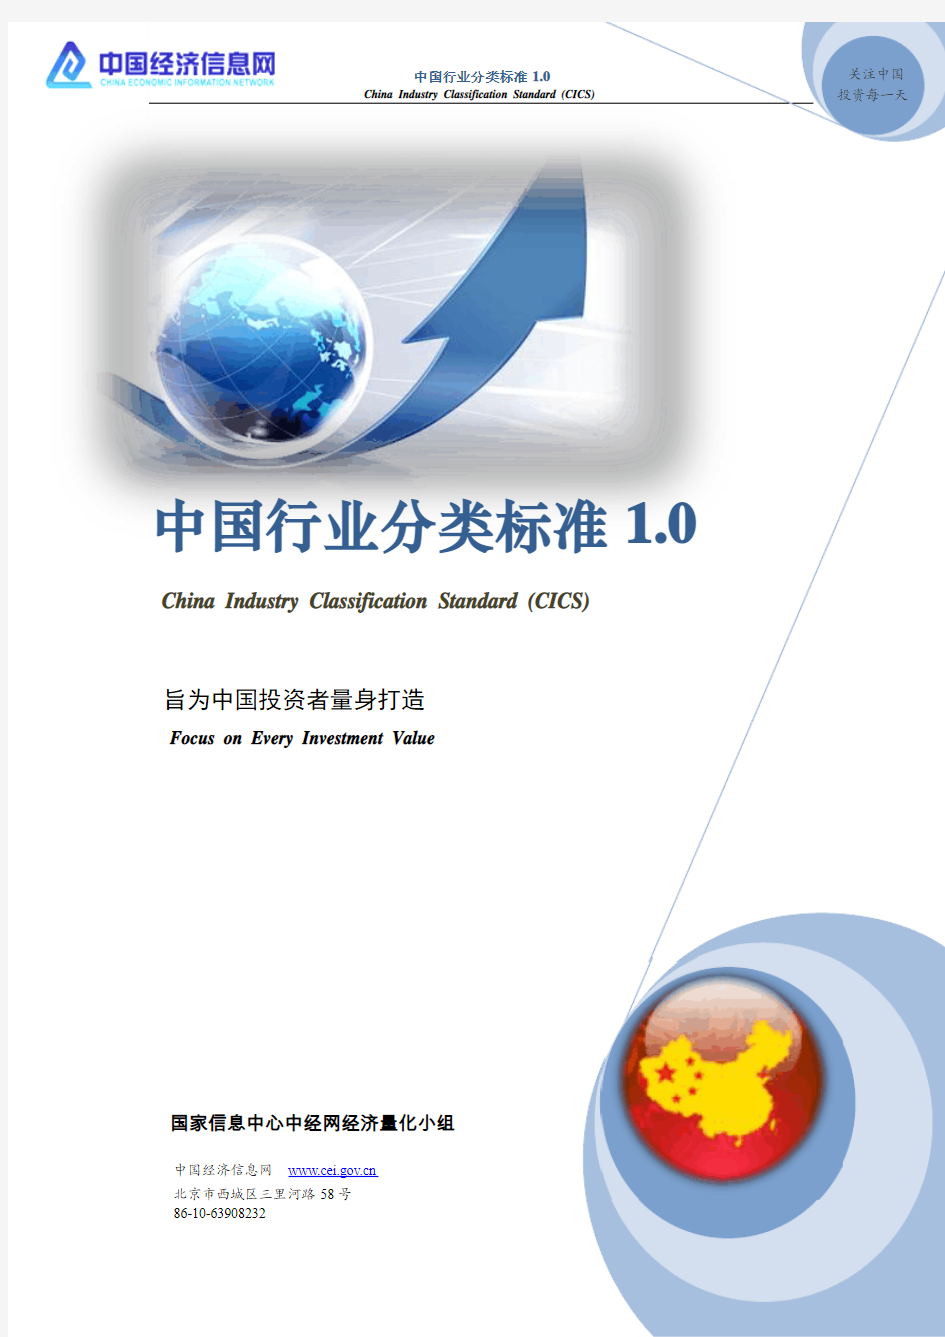 中国行业分类标准1.0版(CICS)(2012.8)